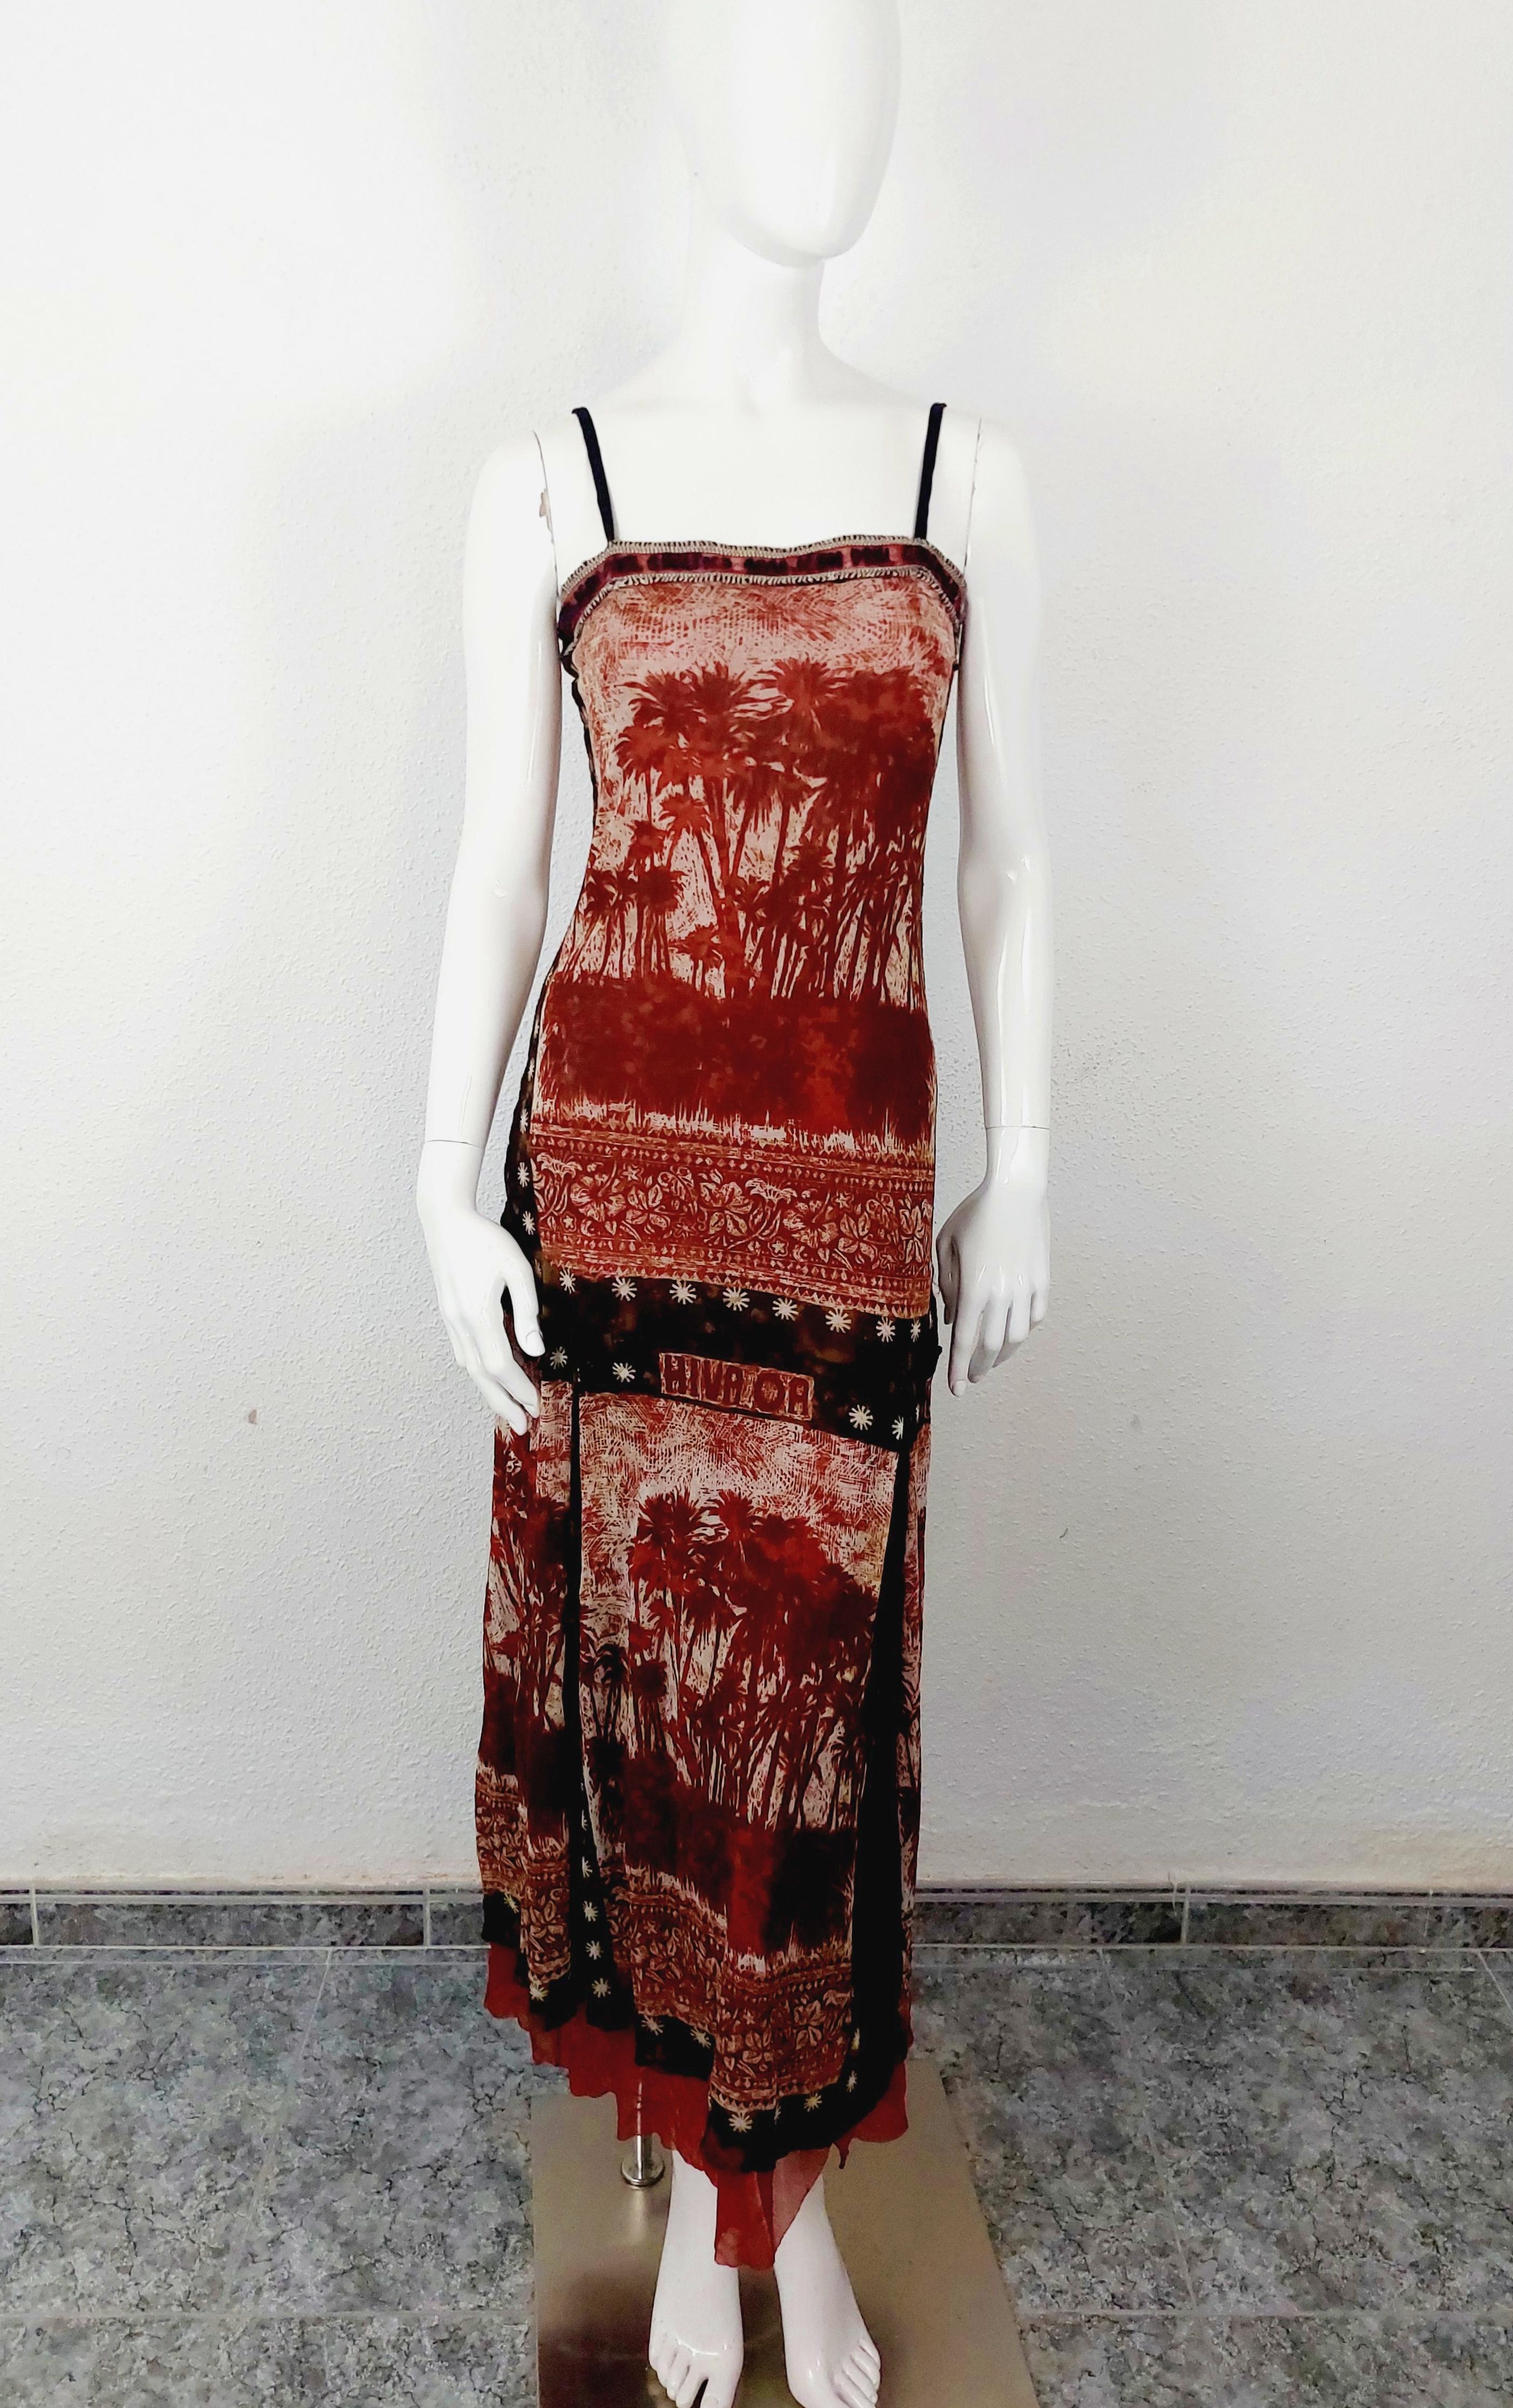 Rare Jean Paul Gaultier mesh Hiva Oa Tropical Palm tree Japan Red Dress 
Elégante et unique robe de collection (Ligne Jean Paul Gaultier 'Hiva Oa') composée d'un haut moulant à manches courtes et d'une jupe longue, de couleur blanche et bordeaux,